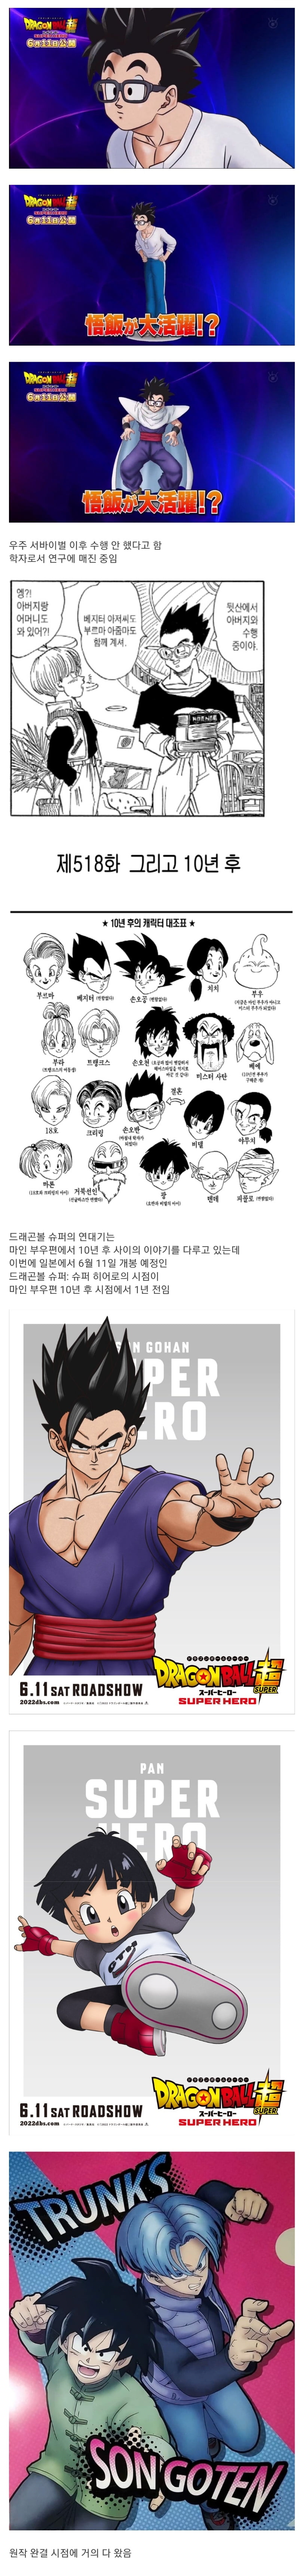 Dragon Ball Super Theater Version Son Oban Updates jpg